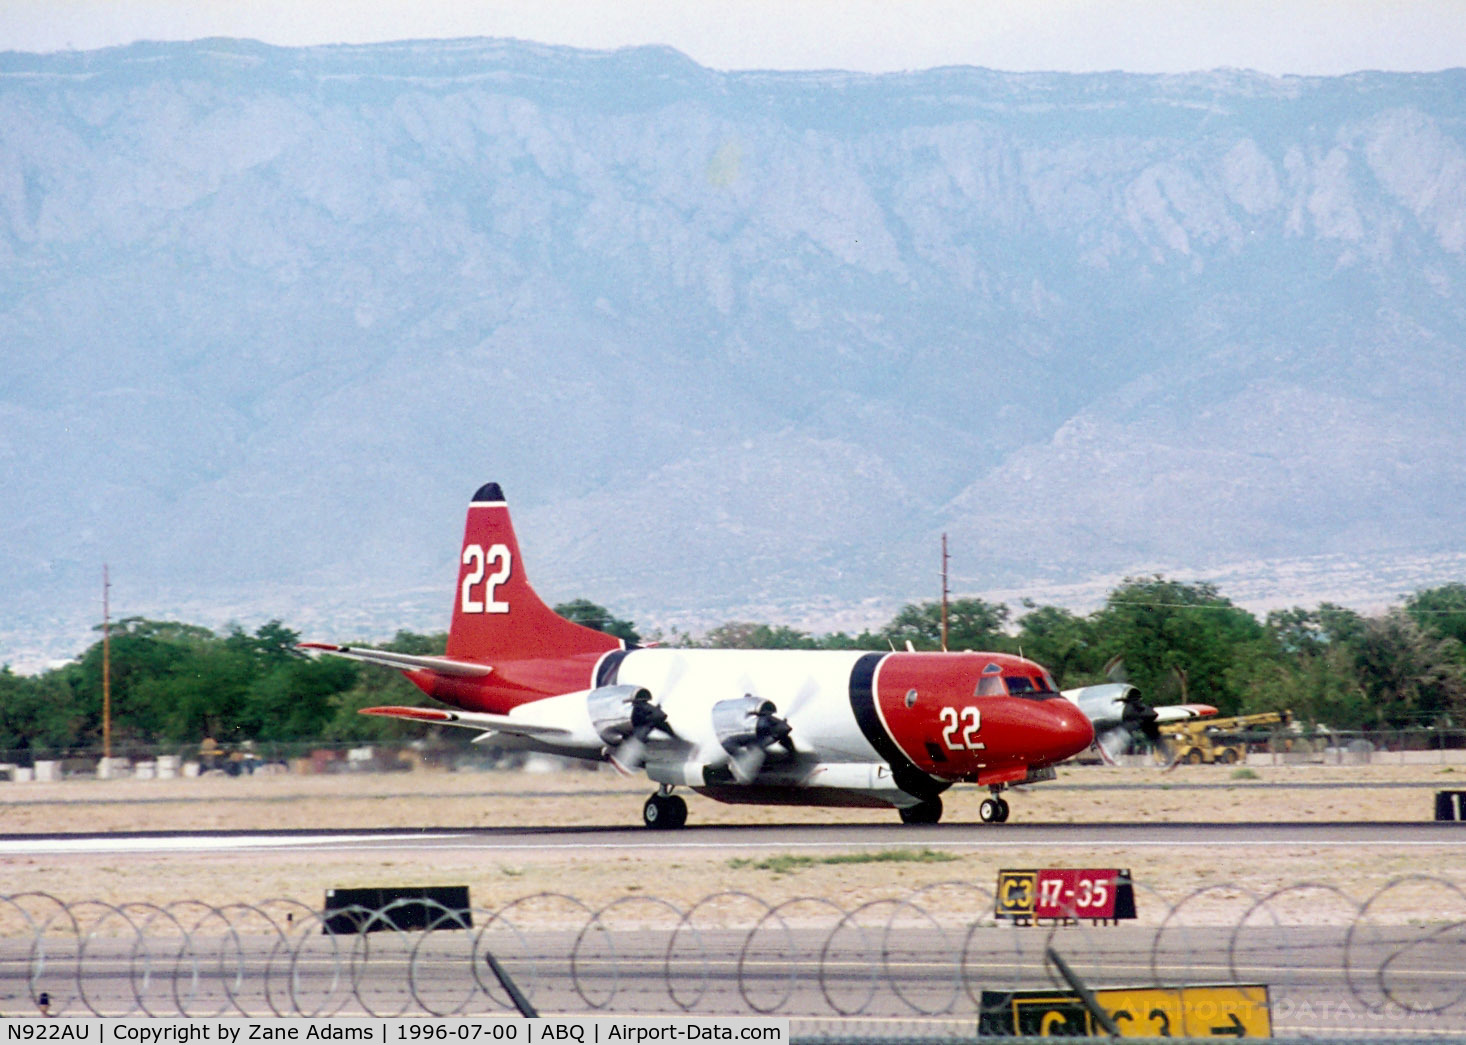 N922AU, Lockheed P-3A Orion C/N 185-5100 (151387), Aero Union Tanker 22 at Albuquerque